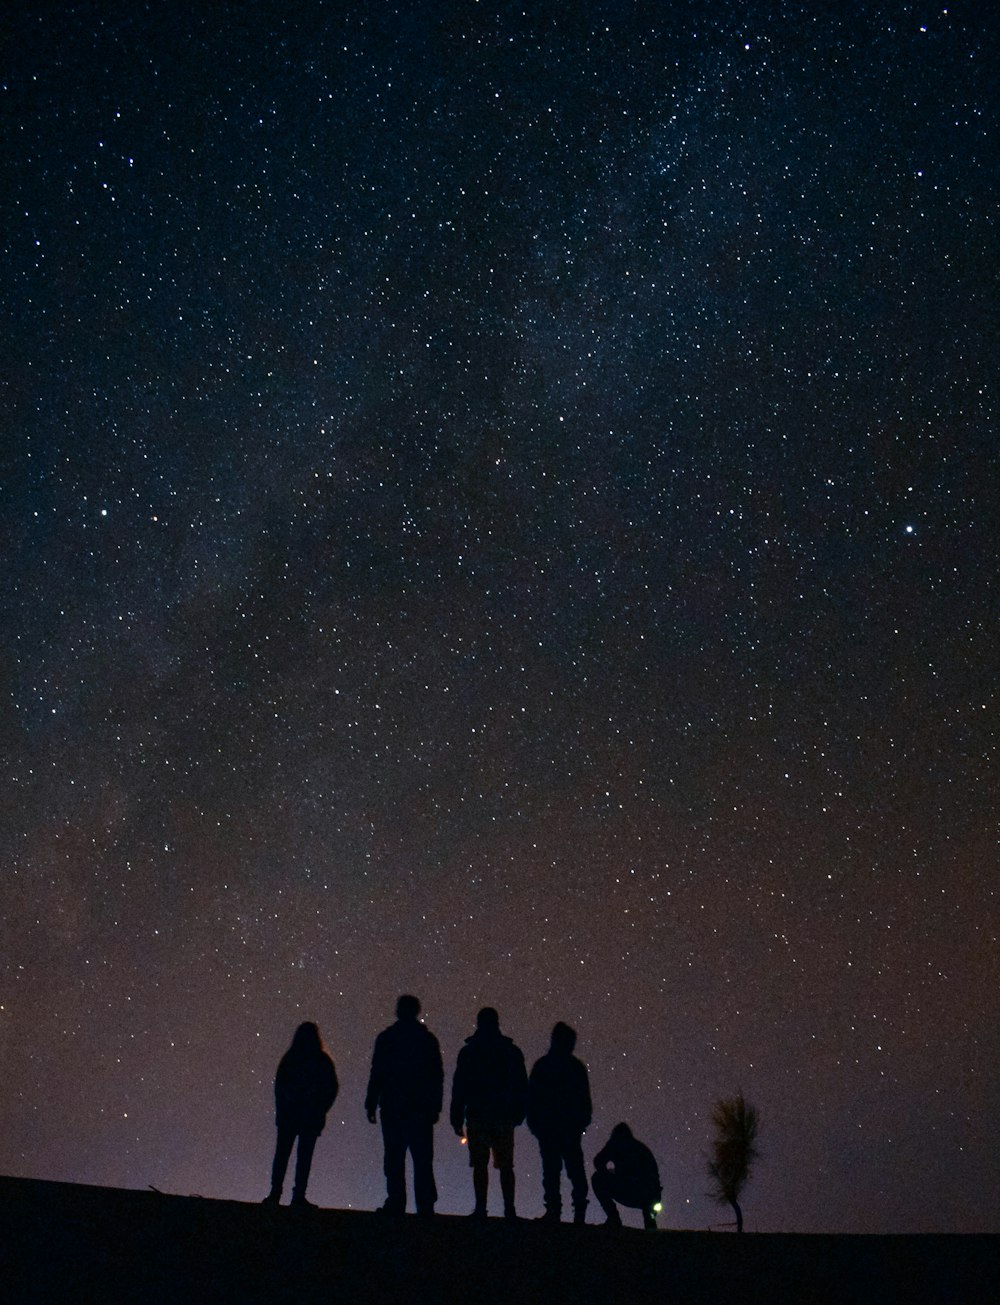 Silueta de cinco personas mirando fijamente a las estrellas en la noche